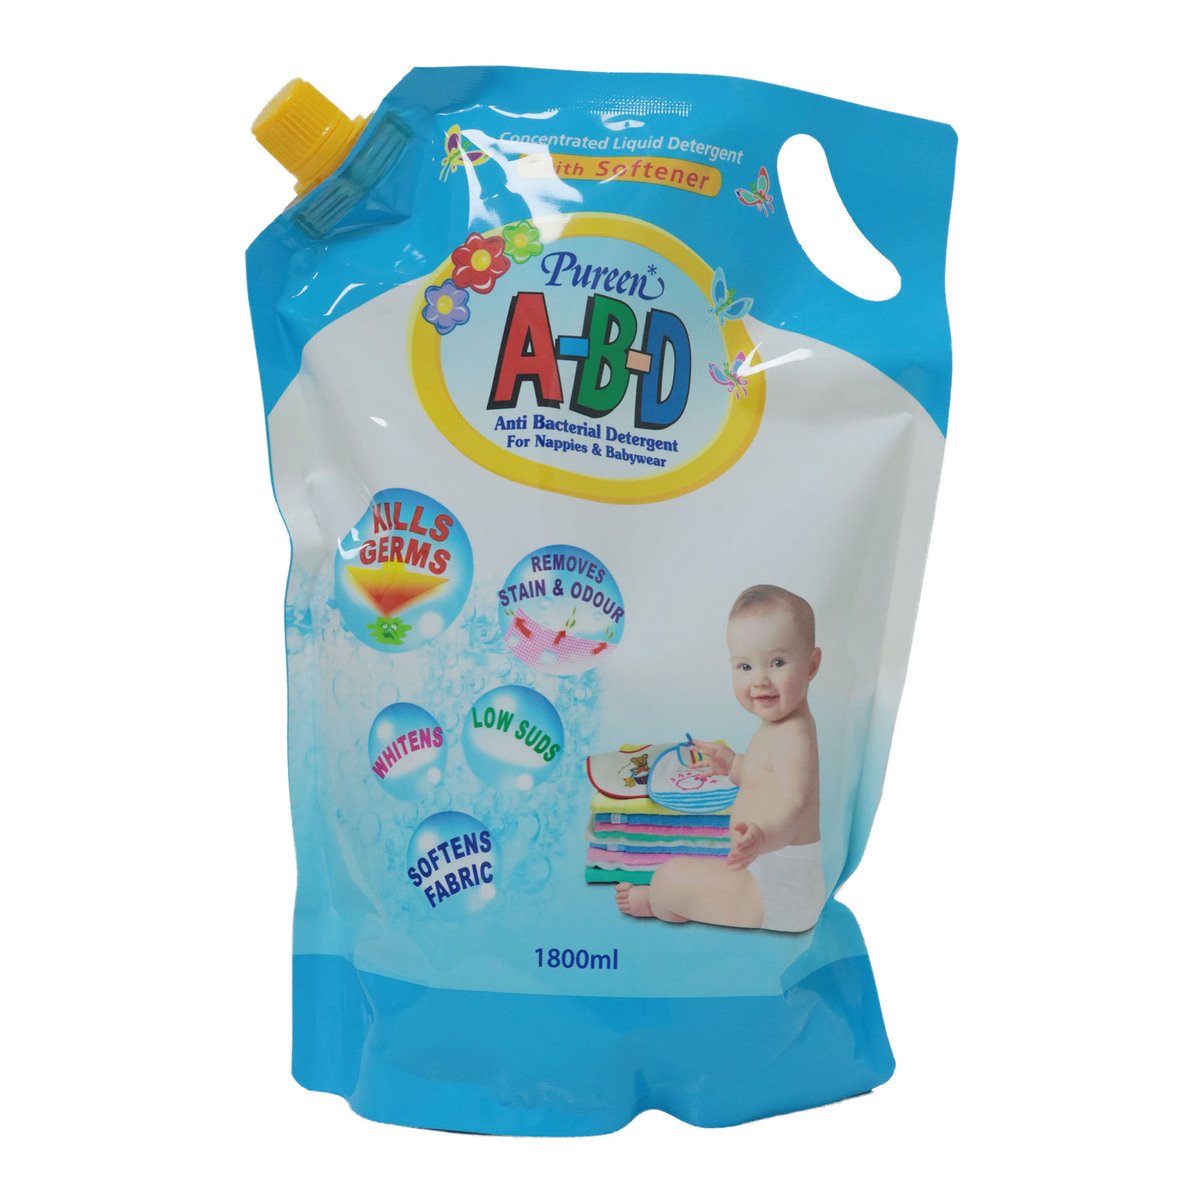 Pureen A-B-D Antibacterial Liquid Detergent Pouch Pack 1800ml